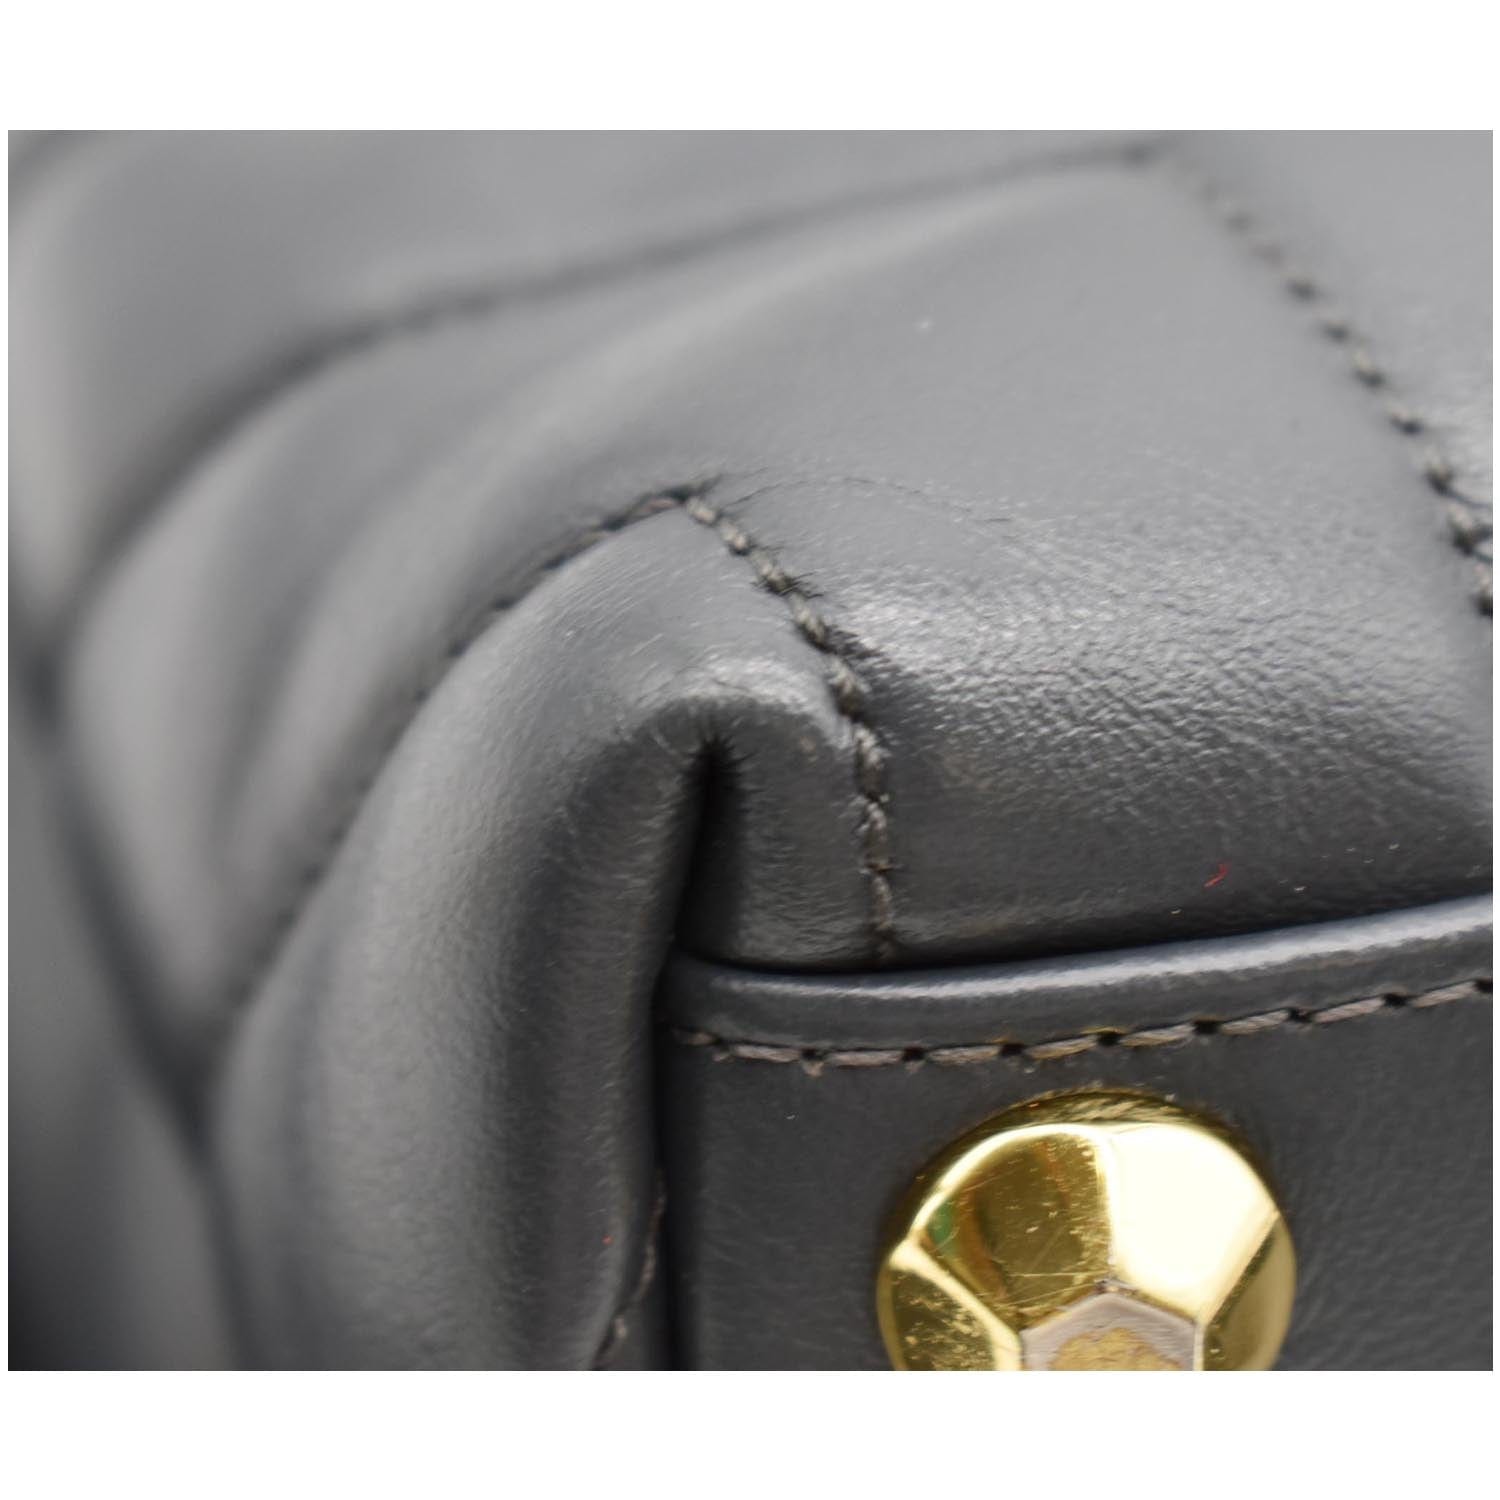 Saint Laurent Loulou Matelasse Y Black Leather Medium Shoulder Silver Chain  Bag - Chronostore